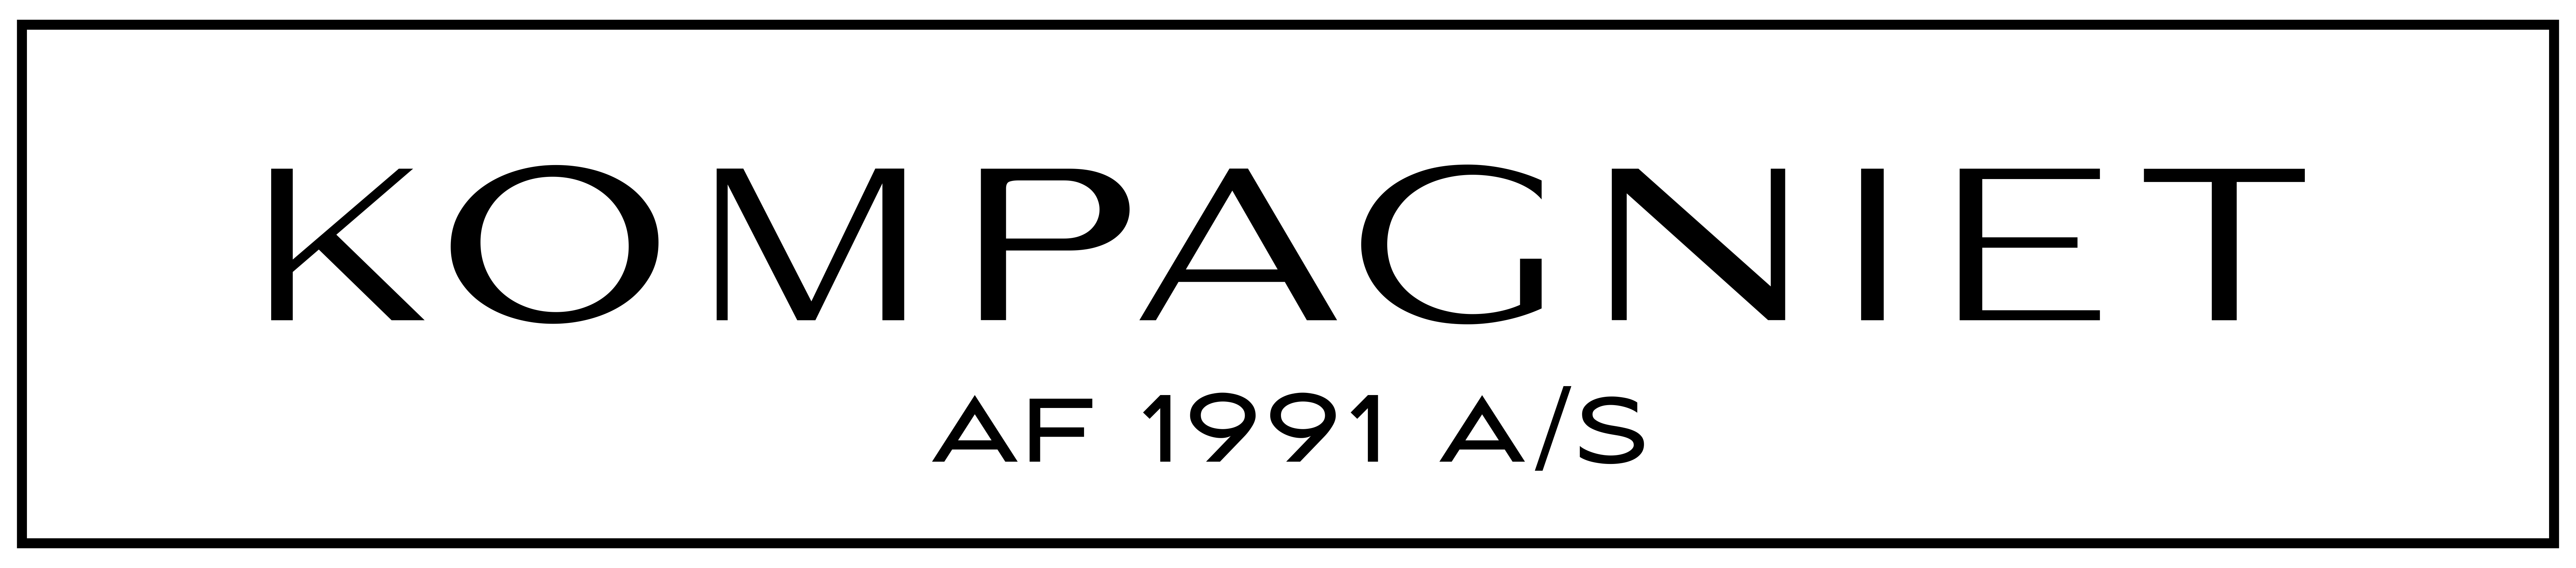 Kompagniet af 1991 logo